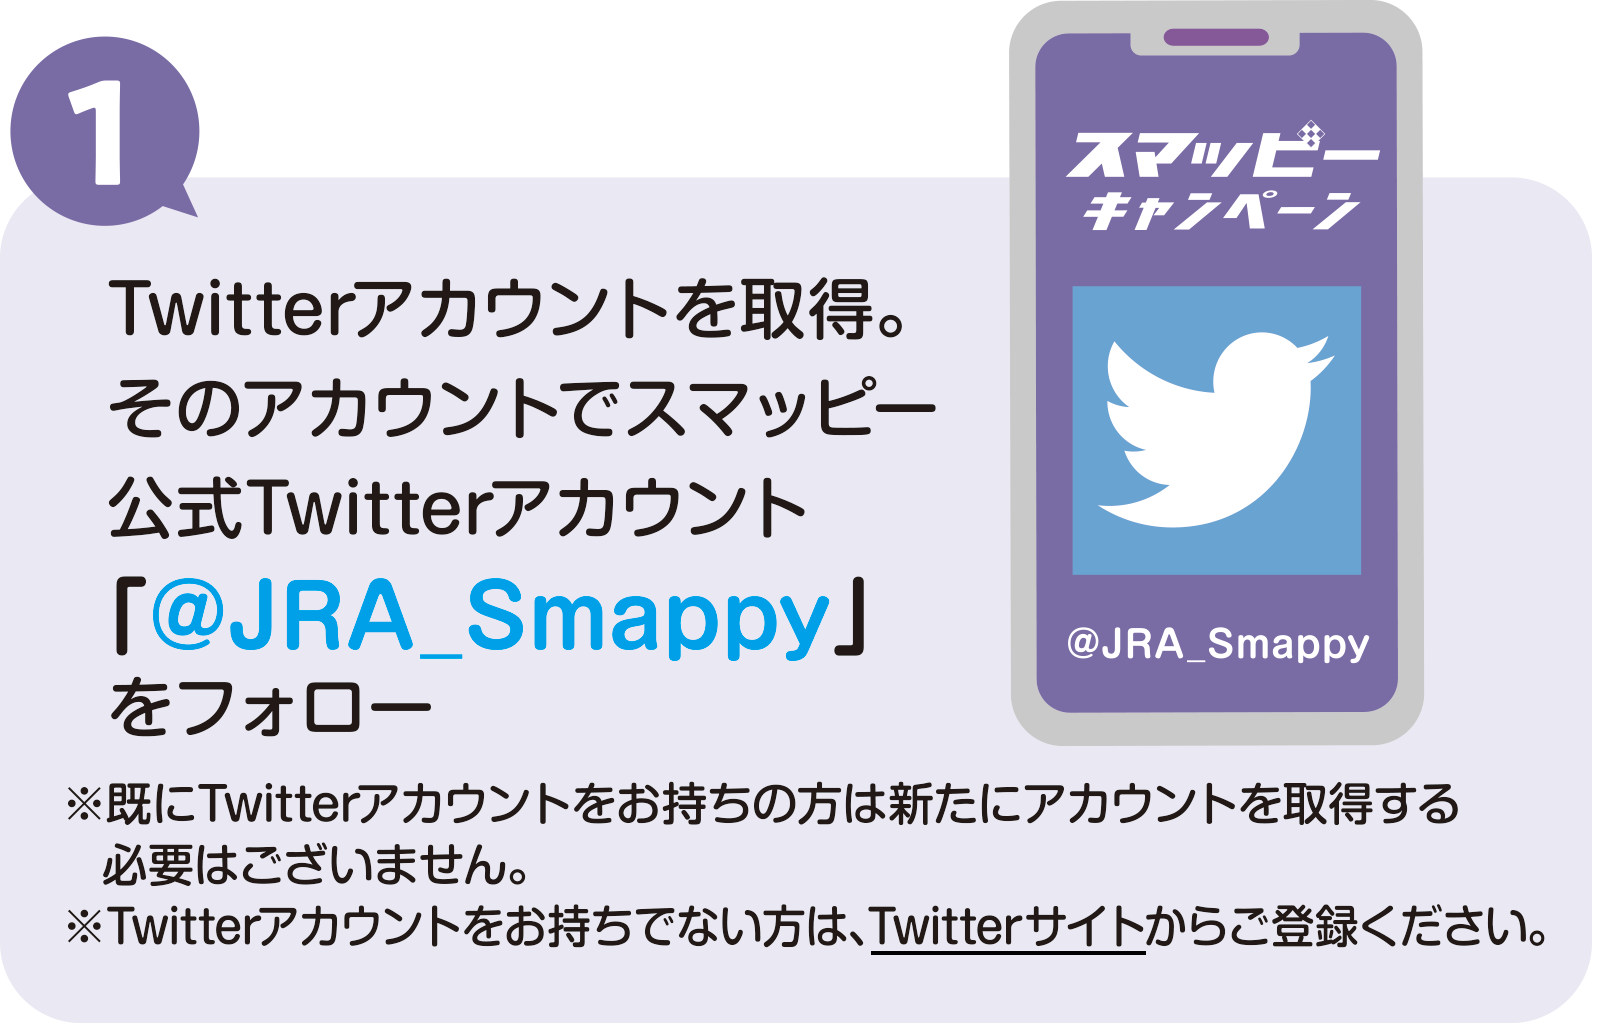 
			1
			スマッピー公式Twitterアカウント「@JRA_Smappy」をフォロー
			※既にTwitterアカウントをお持ちの方は新たにアカウントを取得する必要はございません。
			※Twitterアカウントをお持ちでない方は、Twitterサイトからご登録ください。
			